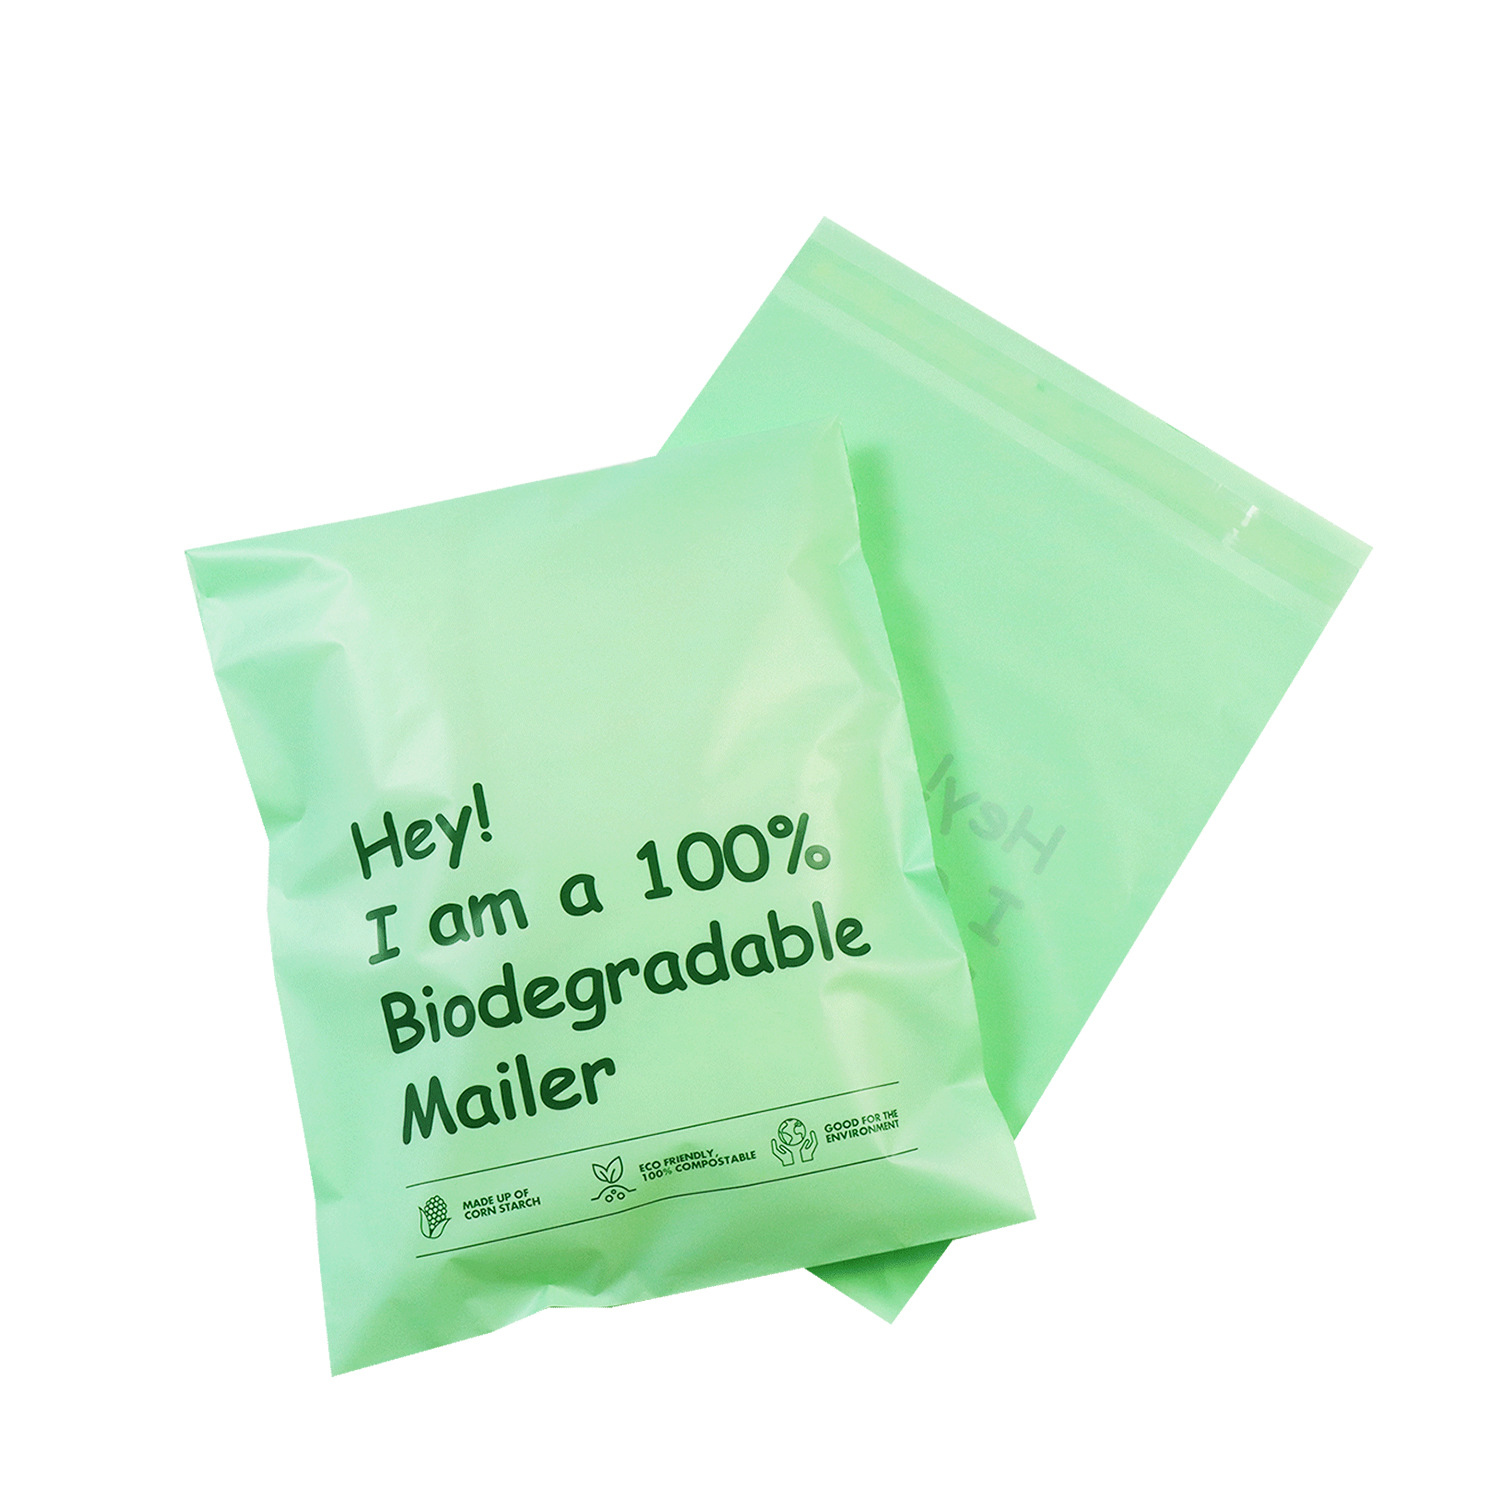 Çantat e transportit 100% të biodegradueshme, Postues polifonik kompostues